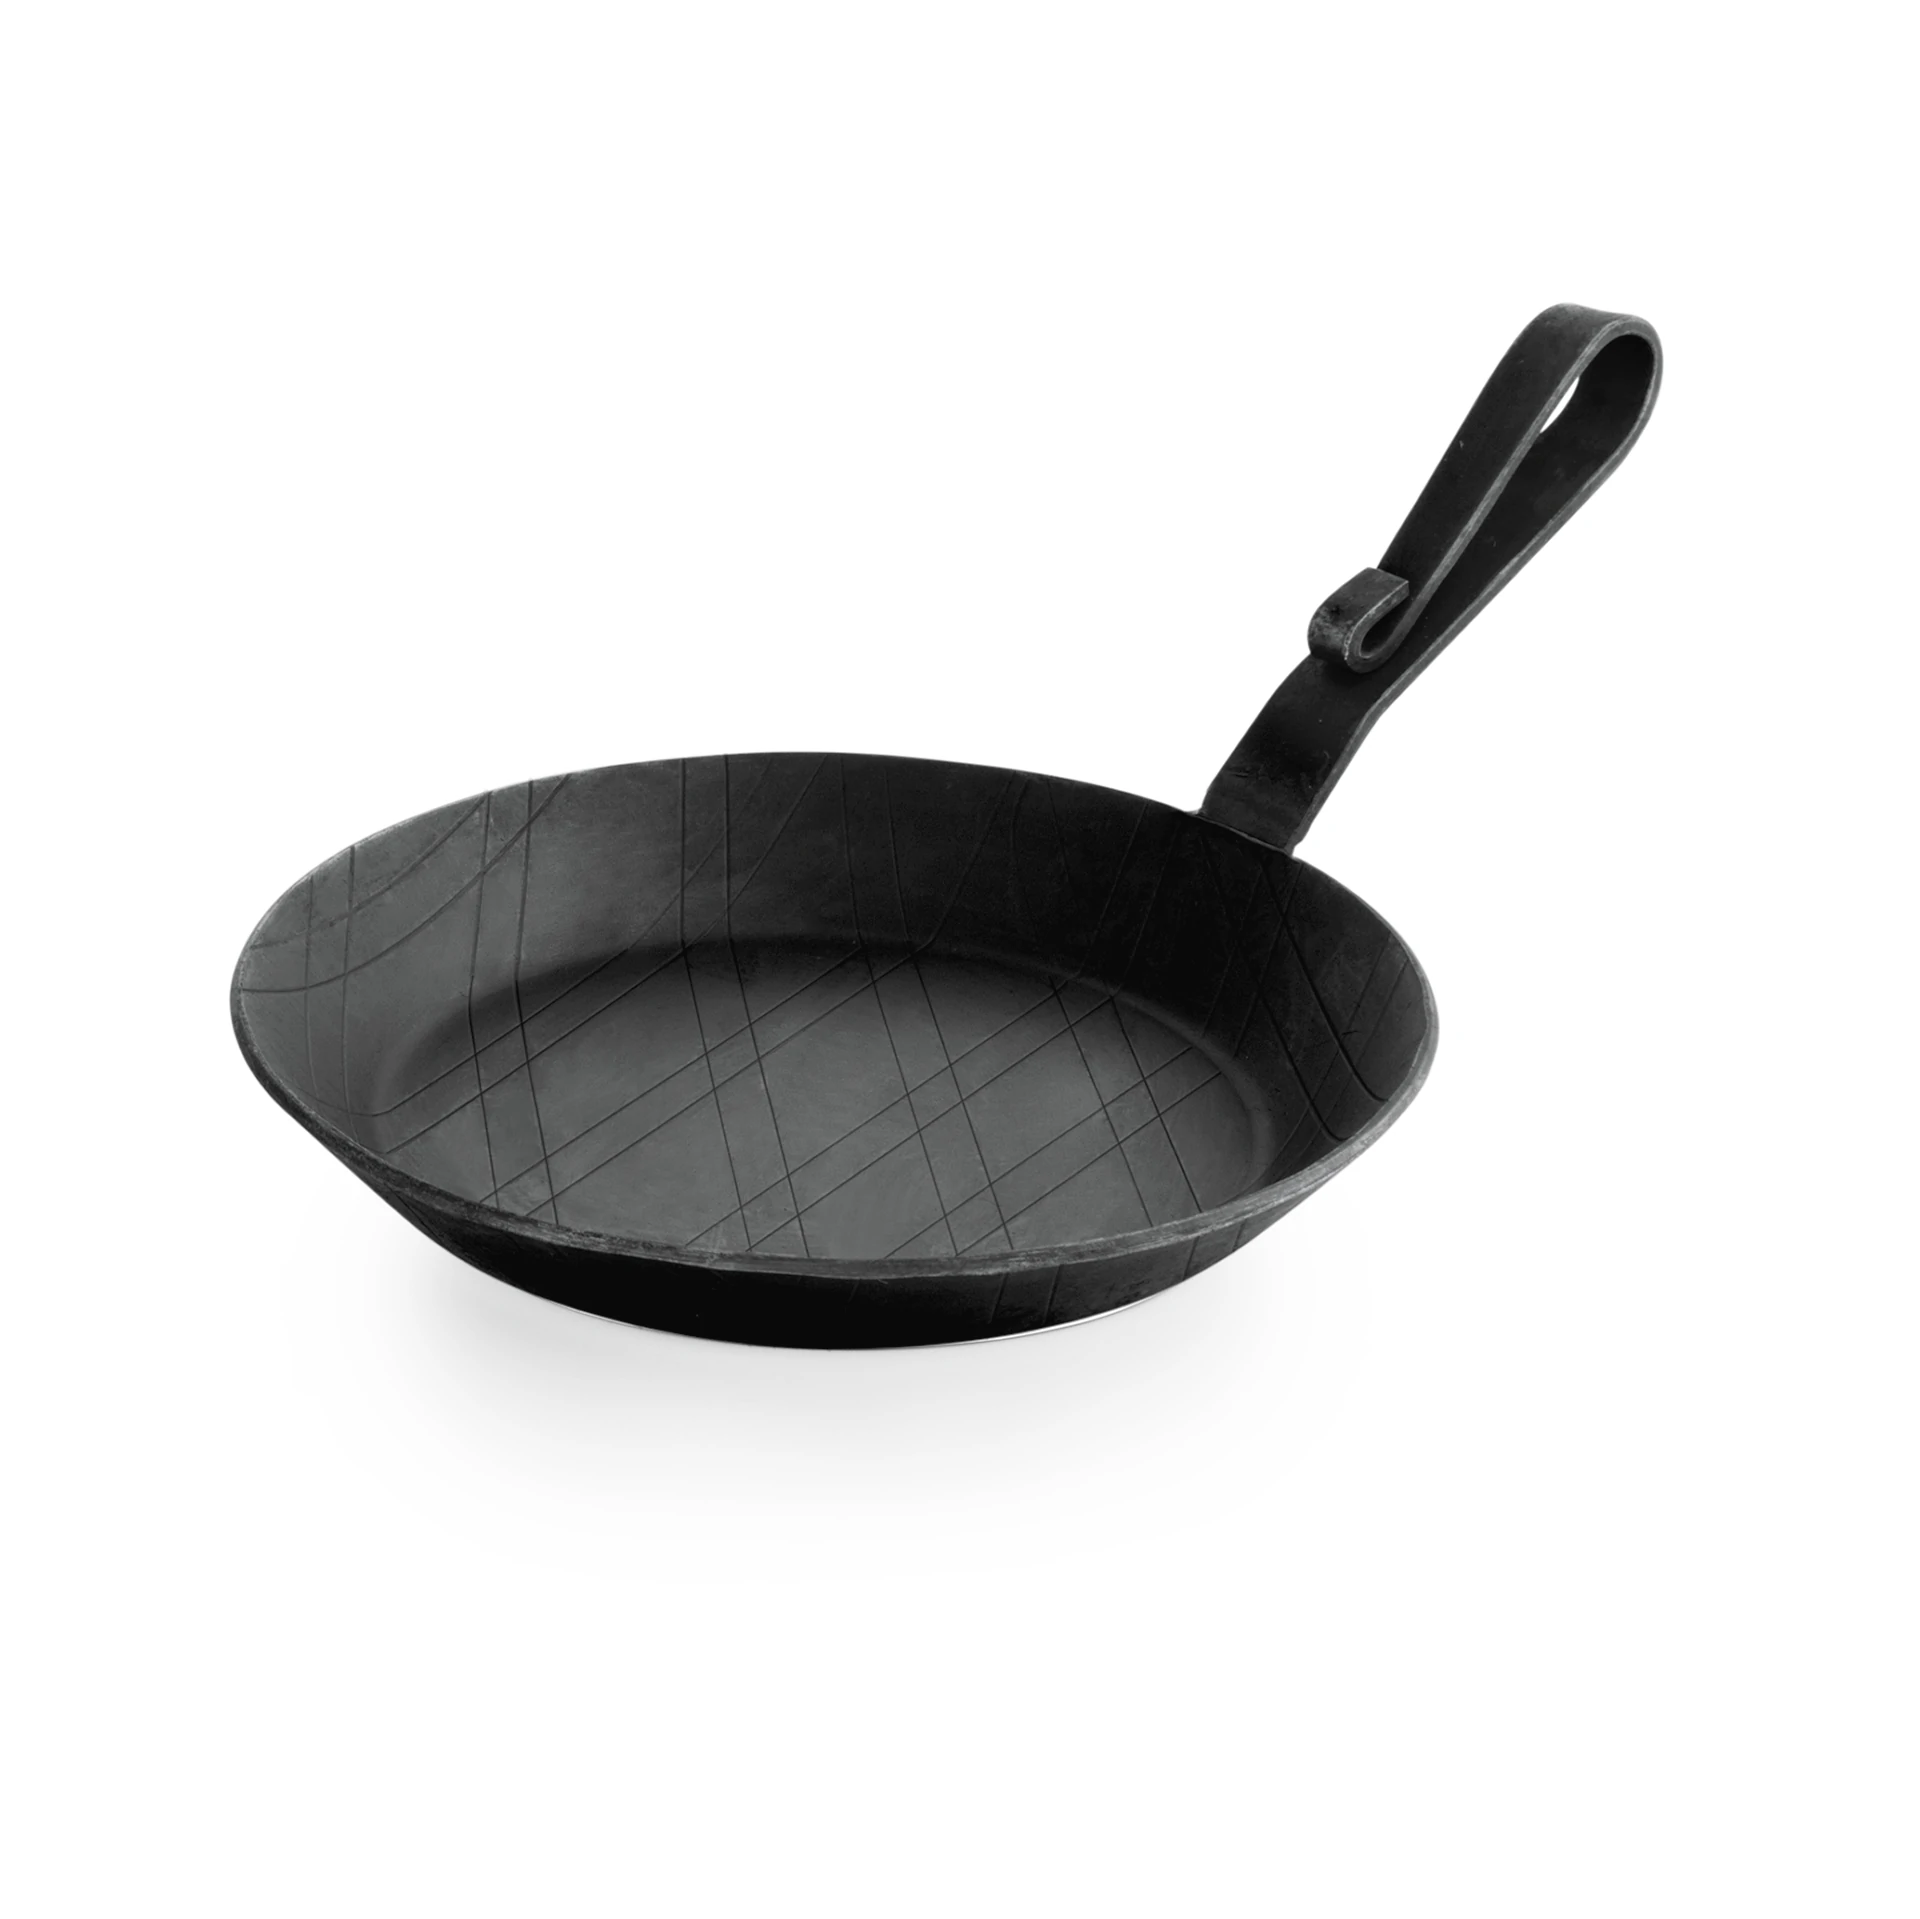 Frying/serving pan